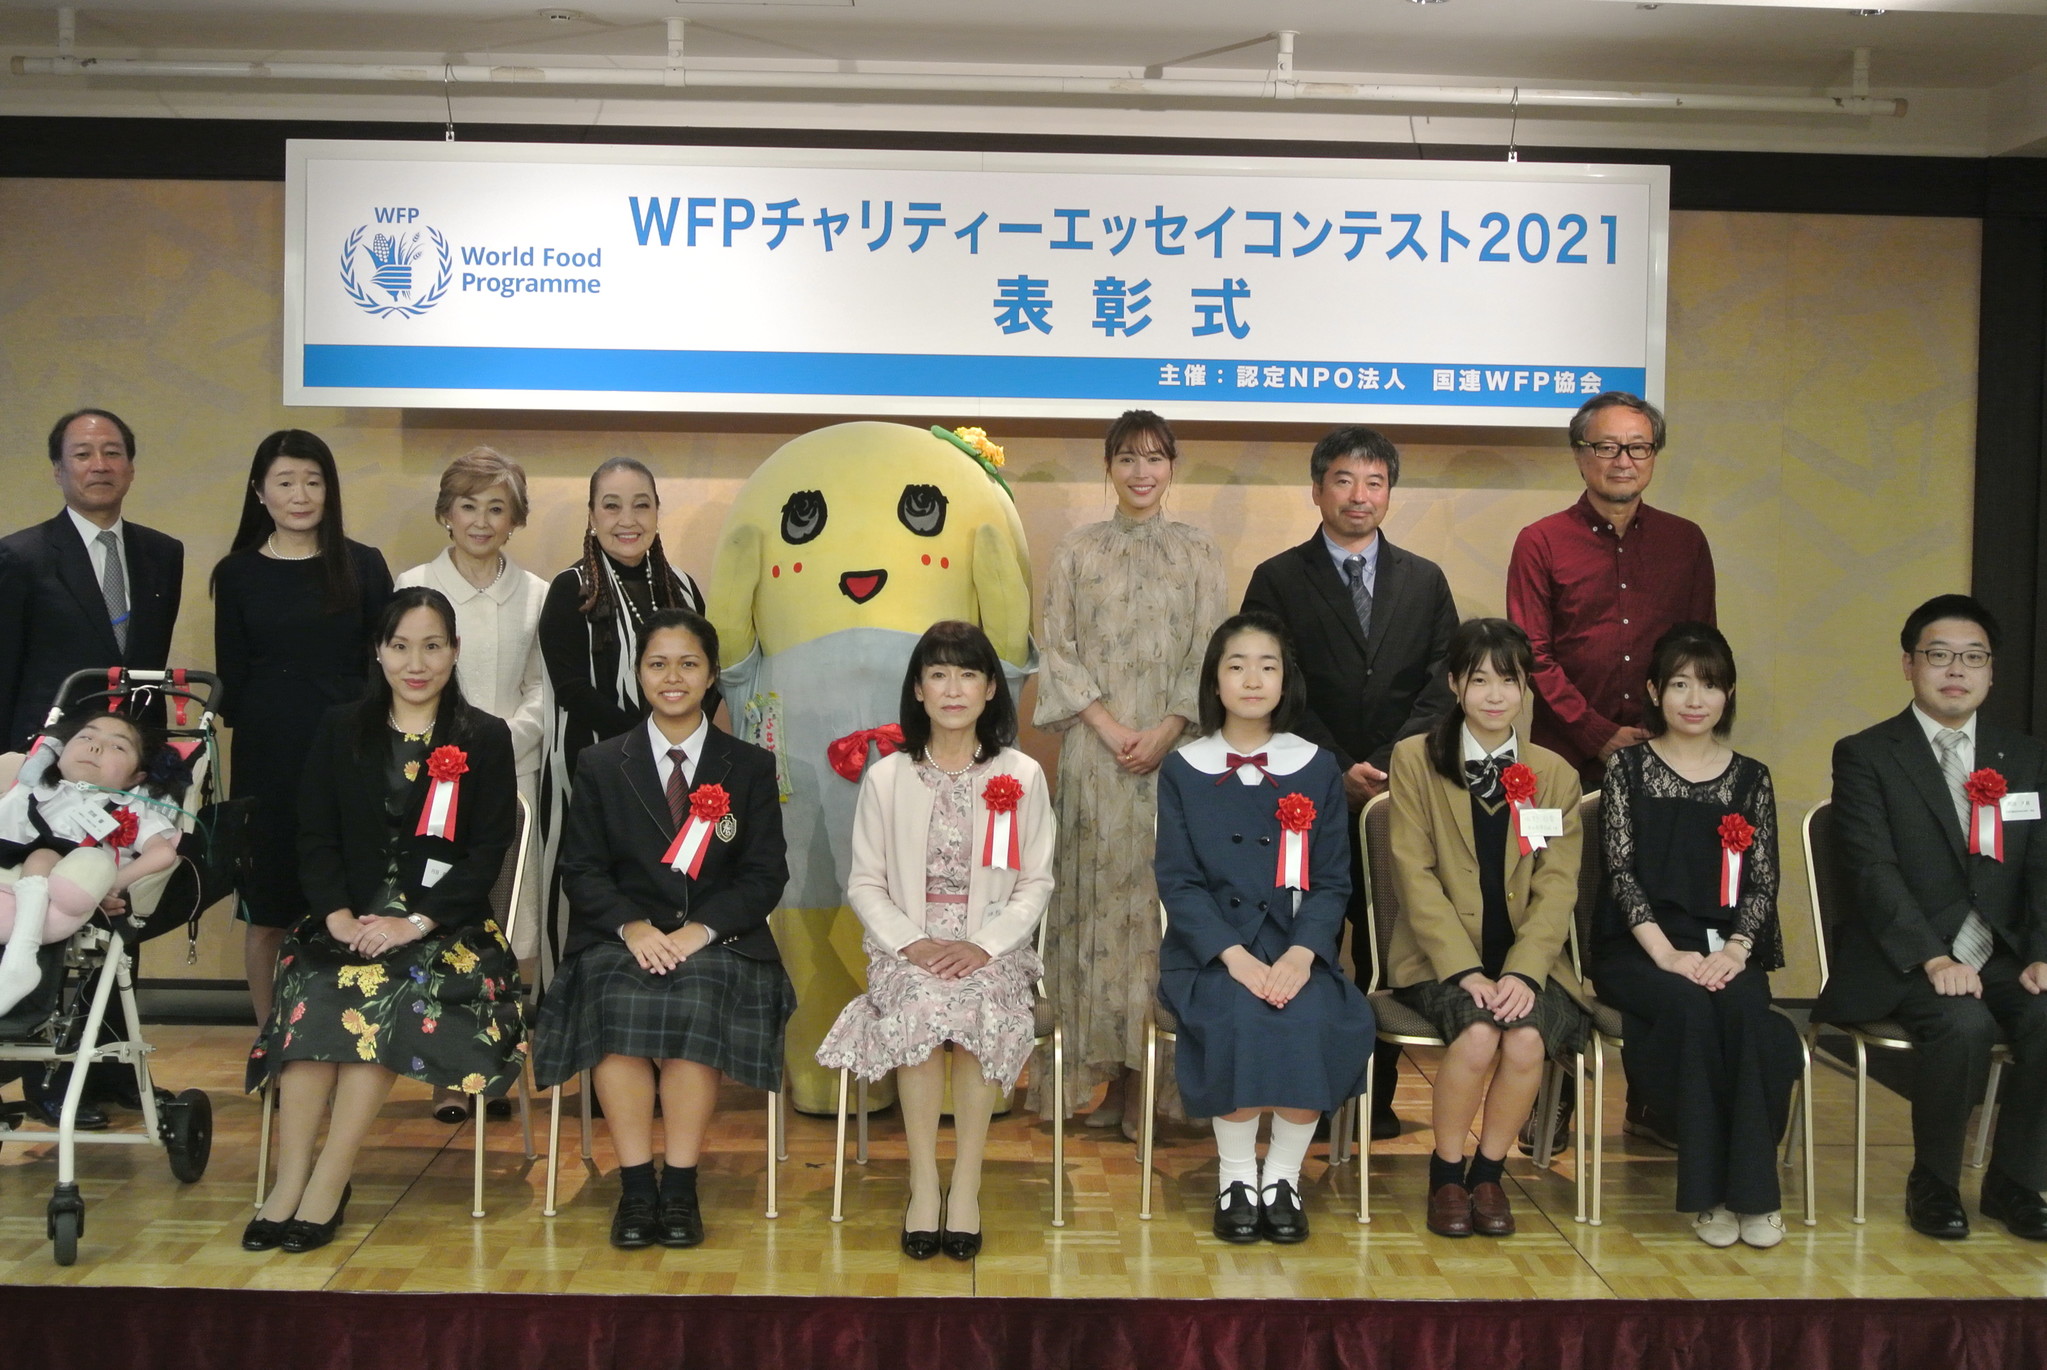 Wfpチャリティー エッセイコンテスト表彰式開催 国連wfpのプレスリリース